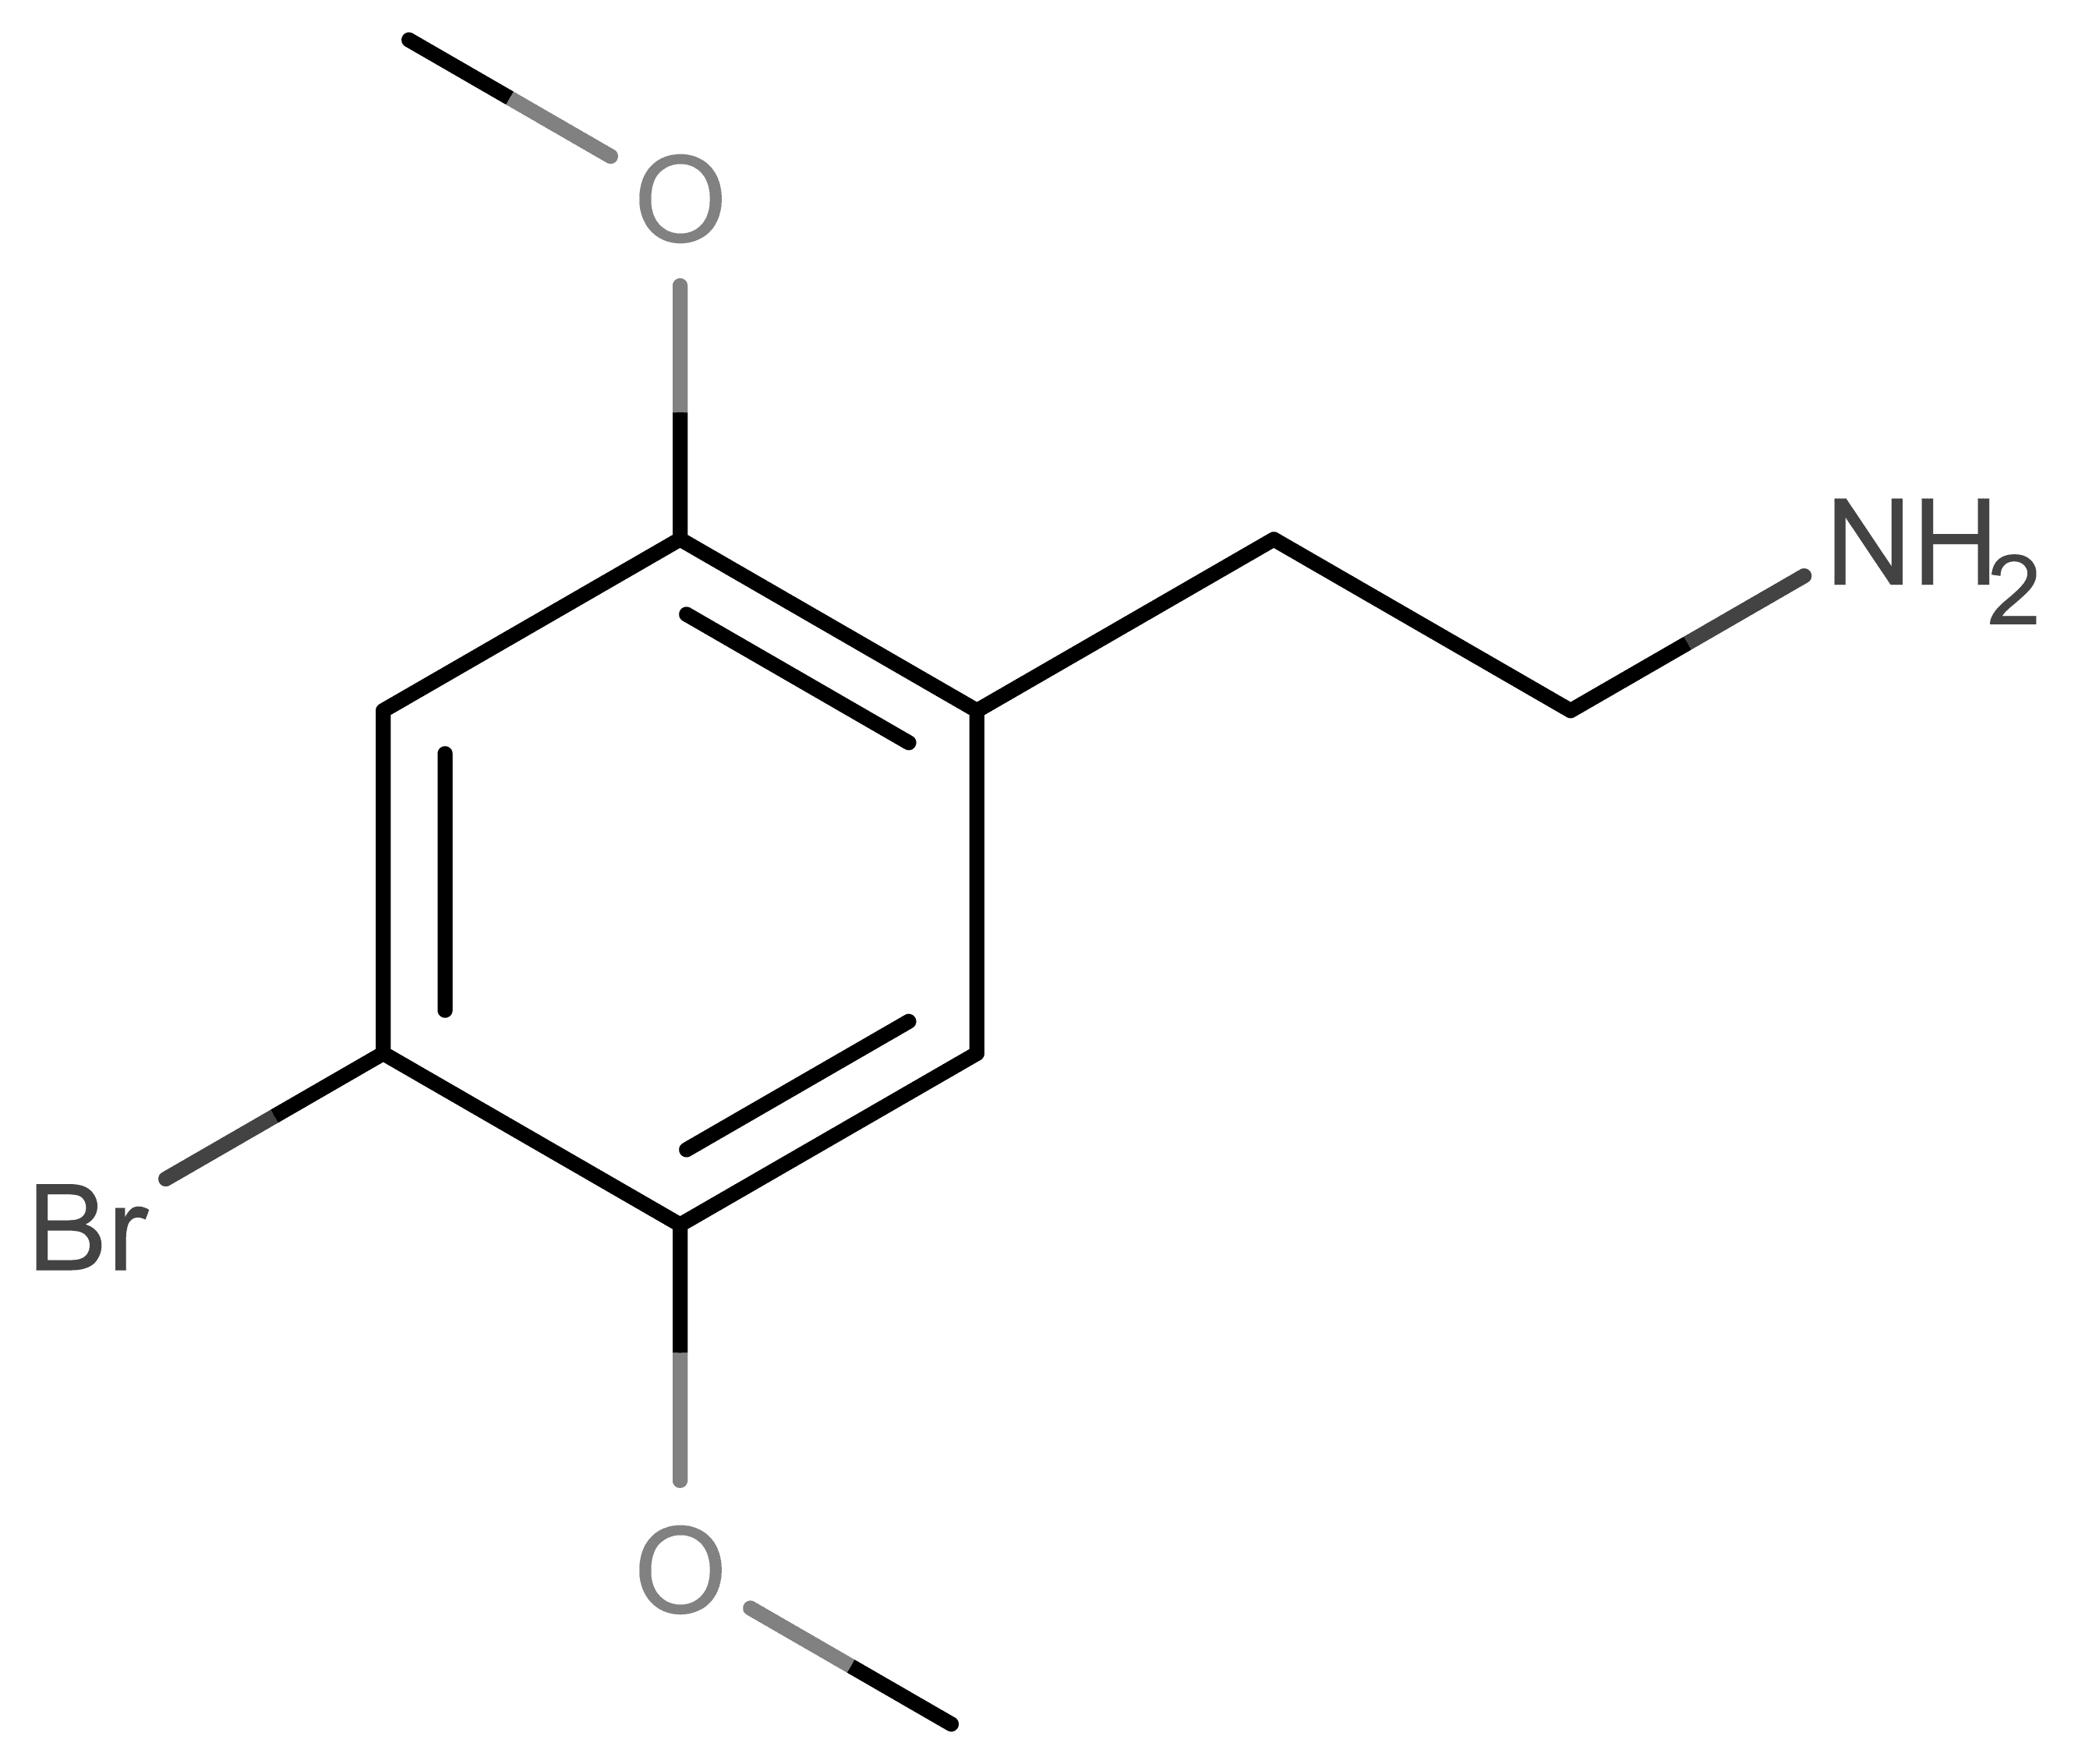 2C-B molecular scheme